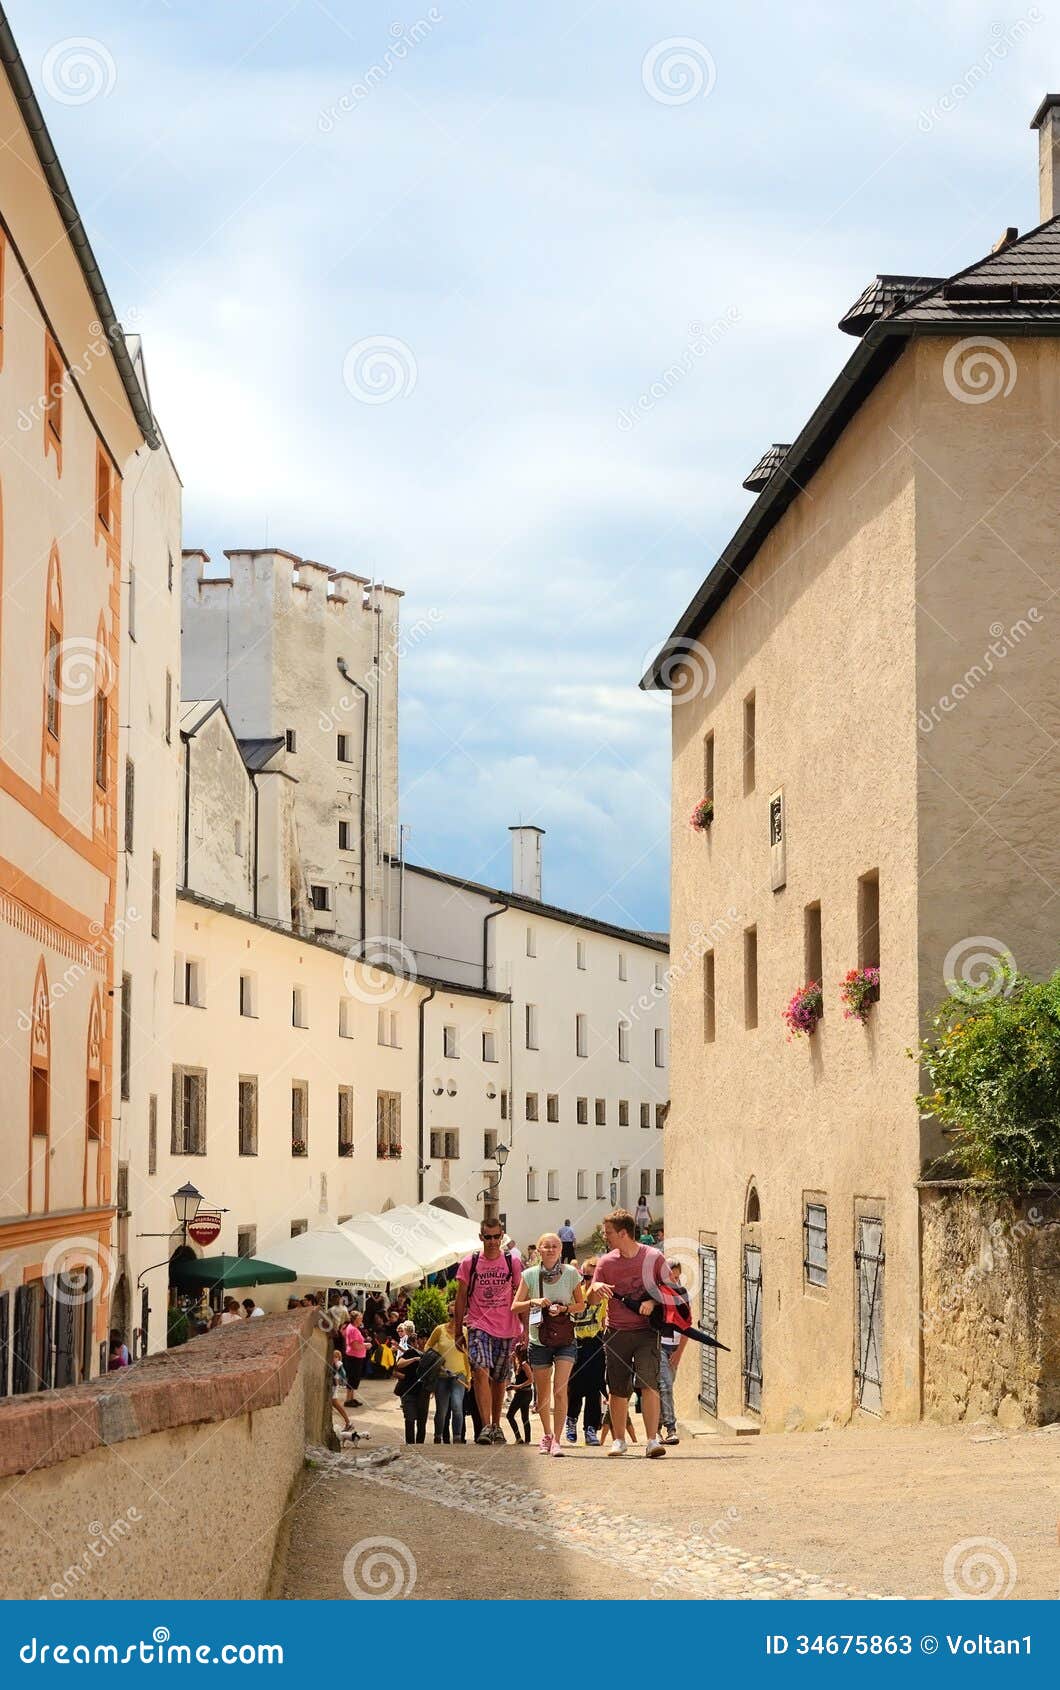 SALZBURG, OOSTENRIJK - JULI 30: De toeristen bezoeken Salzburg op 30 Juli, 2013 in Salzburg, Oostenrijk. Salzburg is geboorteplaats van Wolfgang Amadeus Mozart. De stad werd vermeld als Unesco-Plaats van de Werelderfenis in 1997.